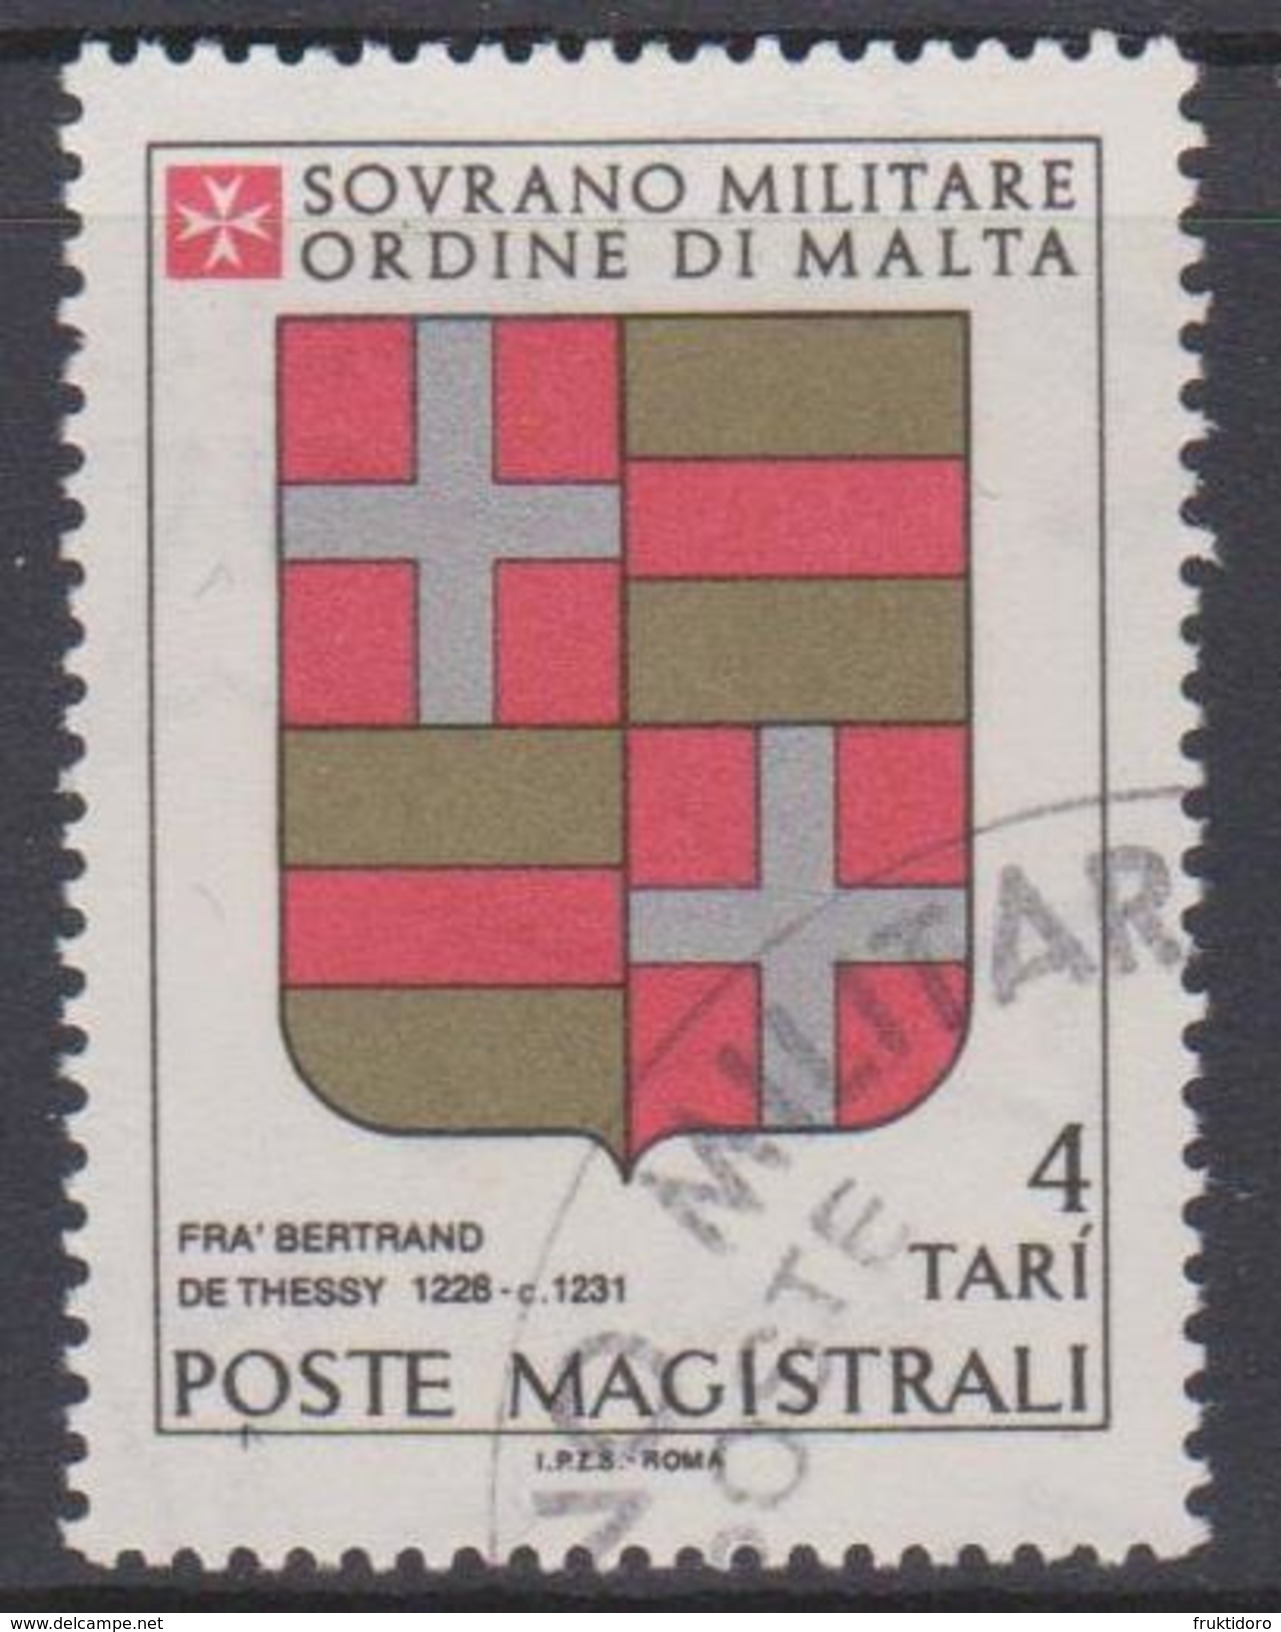 SMOM Sovereign Military Order Of Malta Mi 175 - Coats Of Arms Of The Grand Masters - Bertrand De Thessy - 1980 - Sovrano Militare Ordine Di Malta